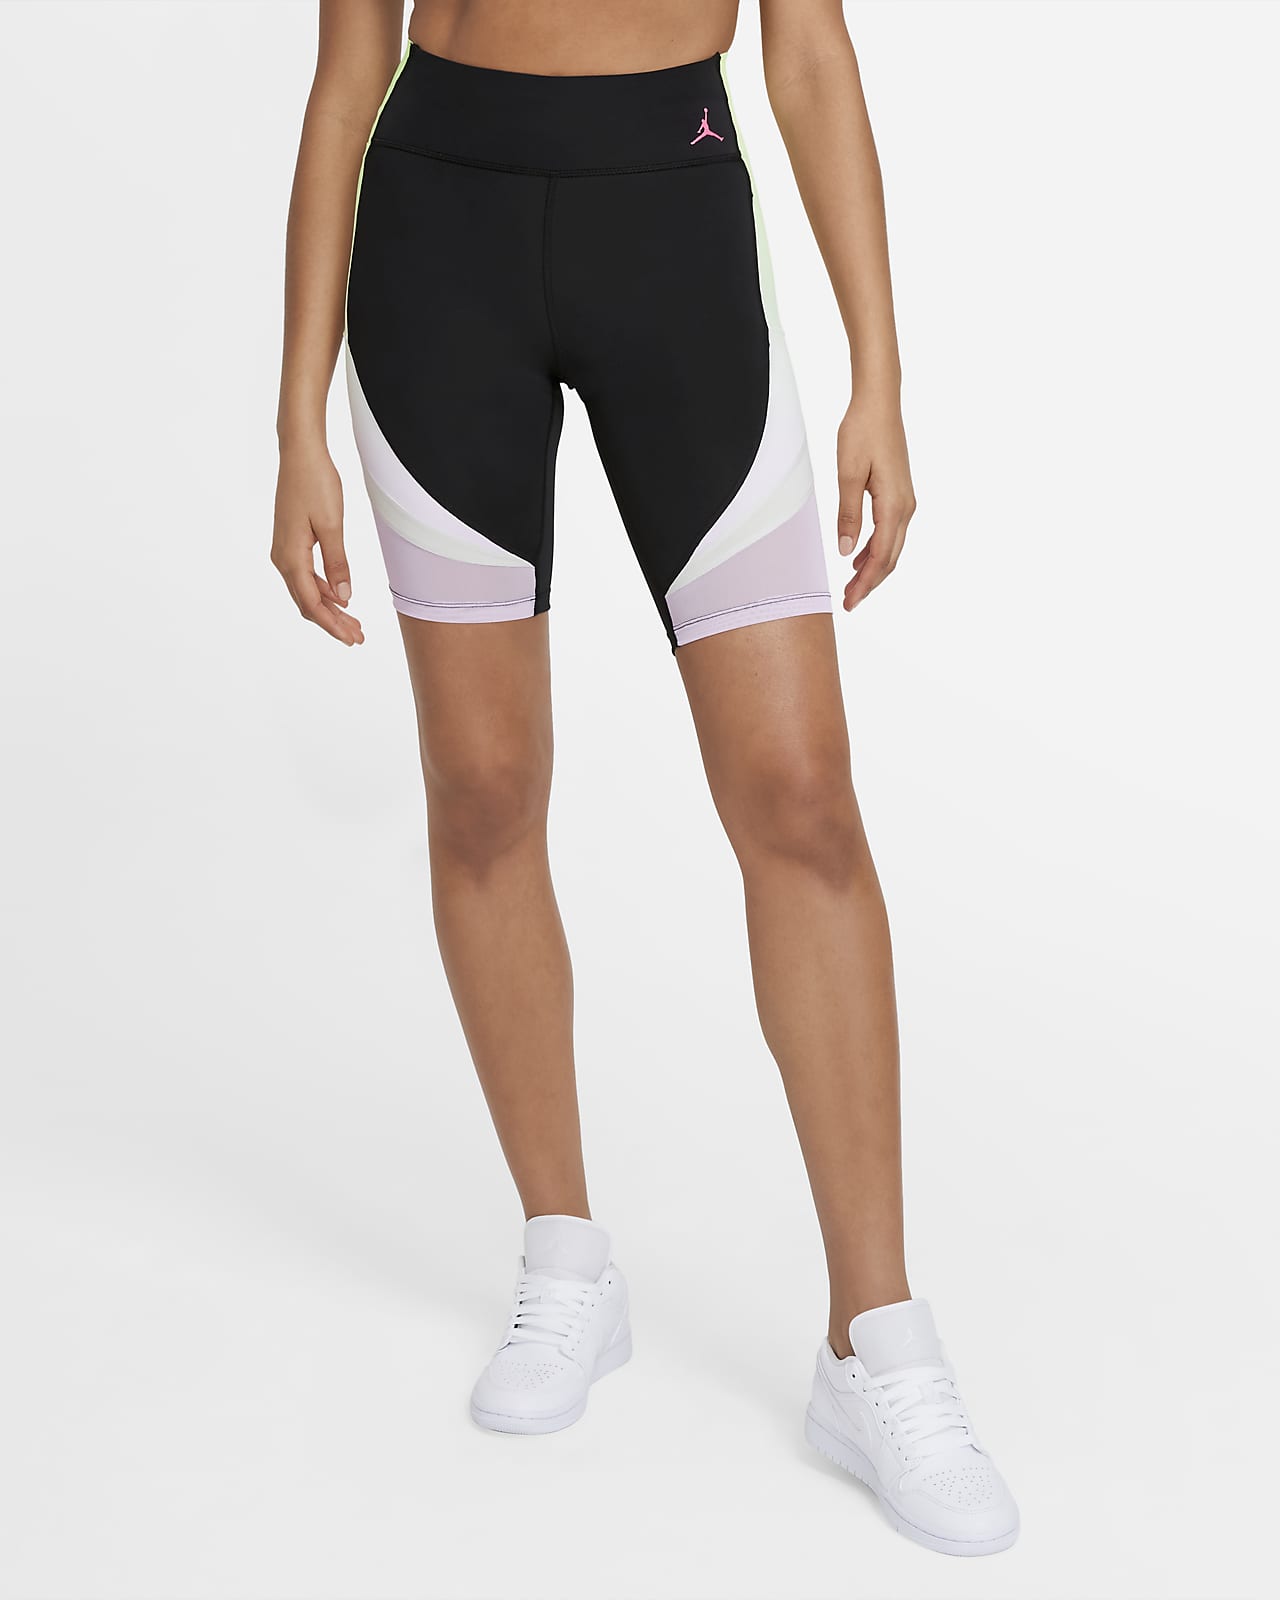 Printed Bike Shorts. Nike JP